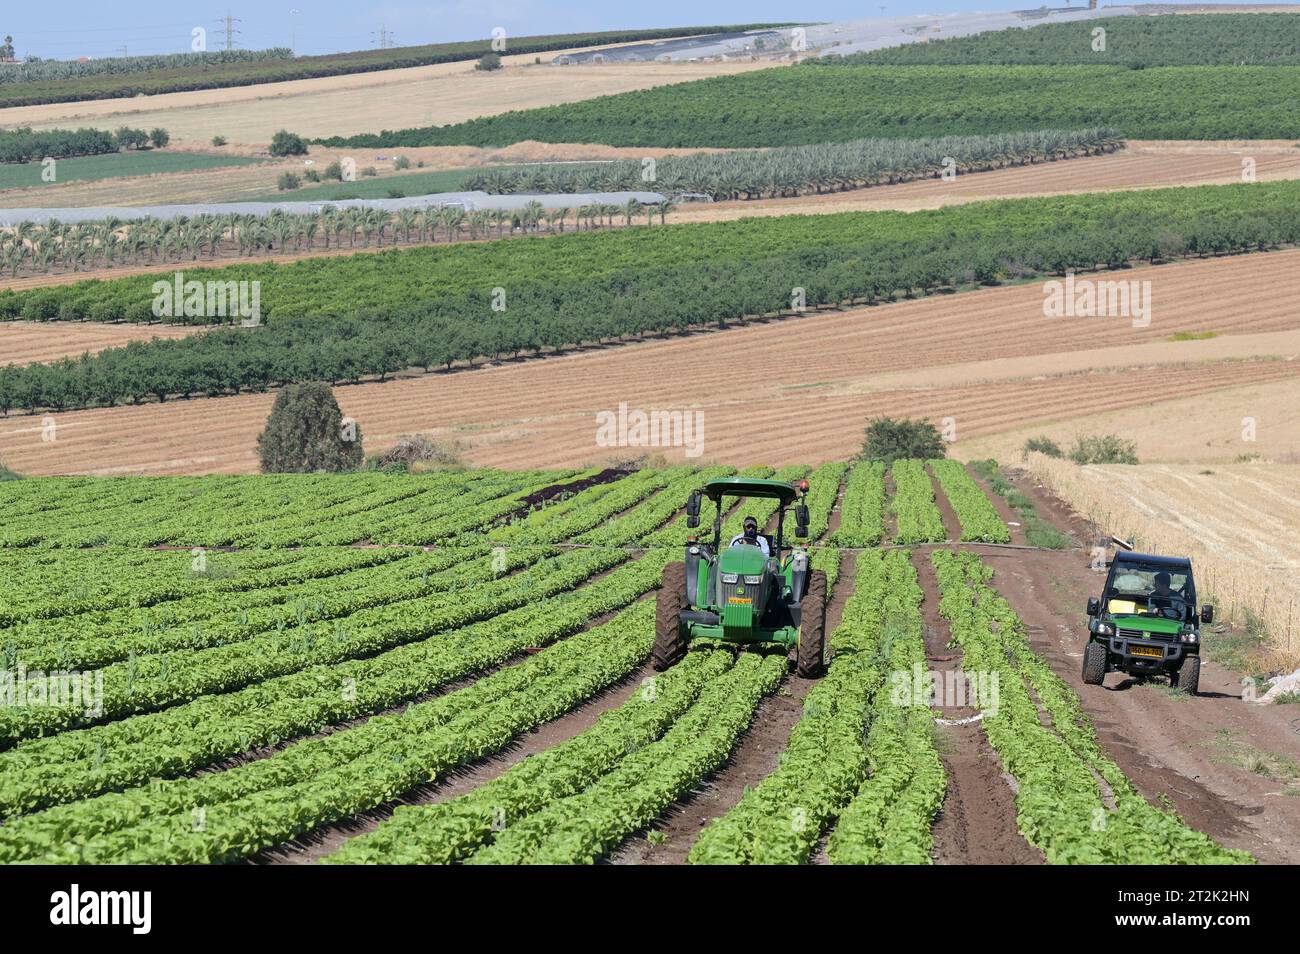 ISRAËL, Jabneel ou Jawneel ou Javneel près de Tibériade, ferme fruitière et maraîchère de 50 ha avec irrigation goutte à goutte, plantes à salade Banque D'Images